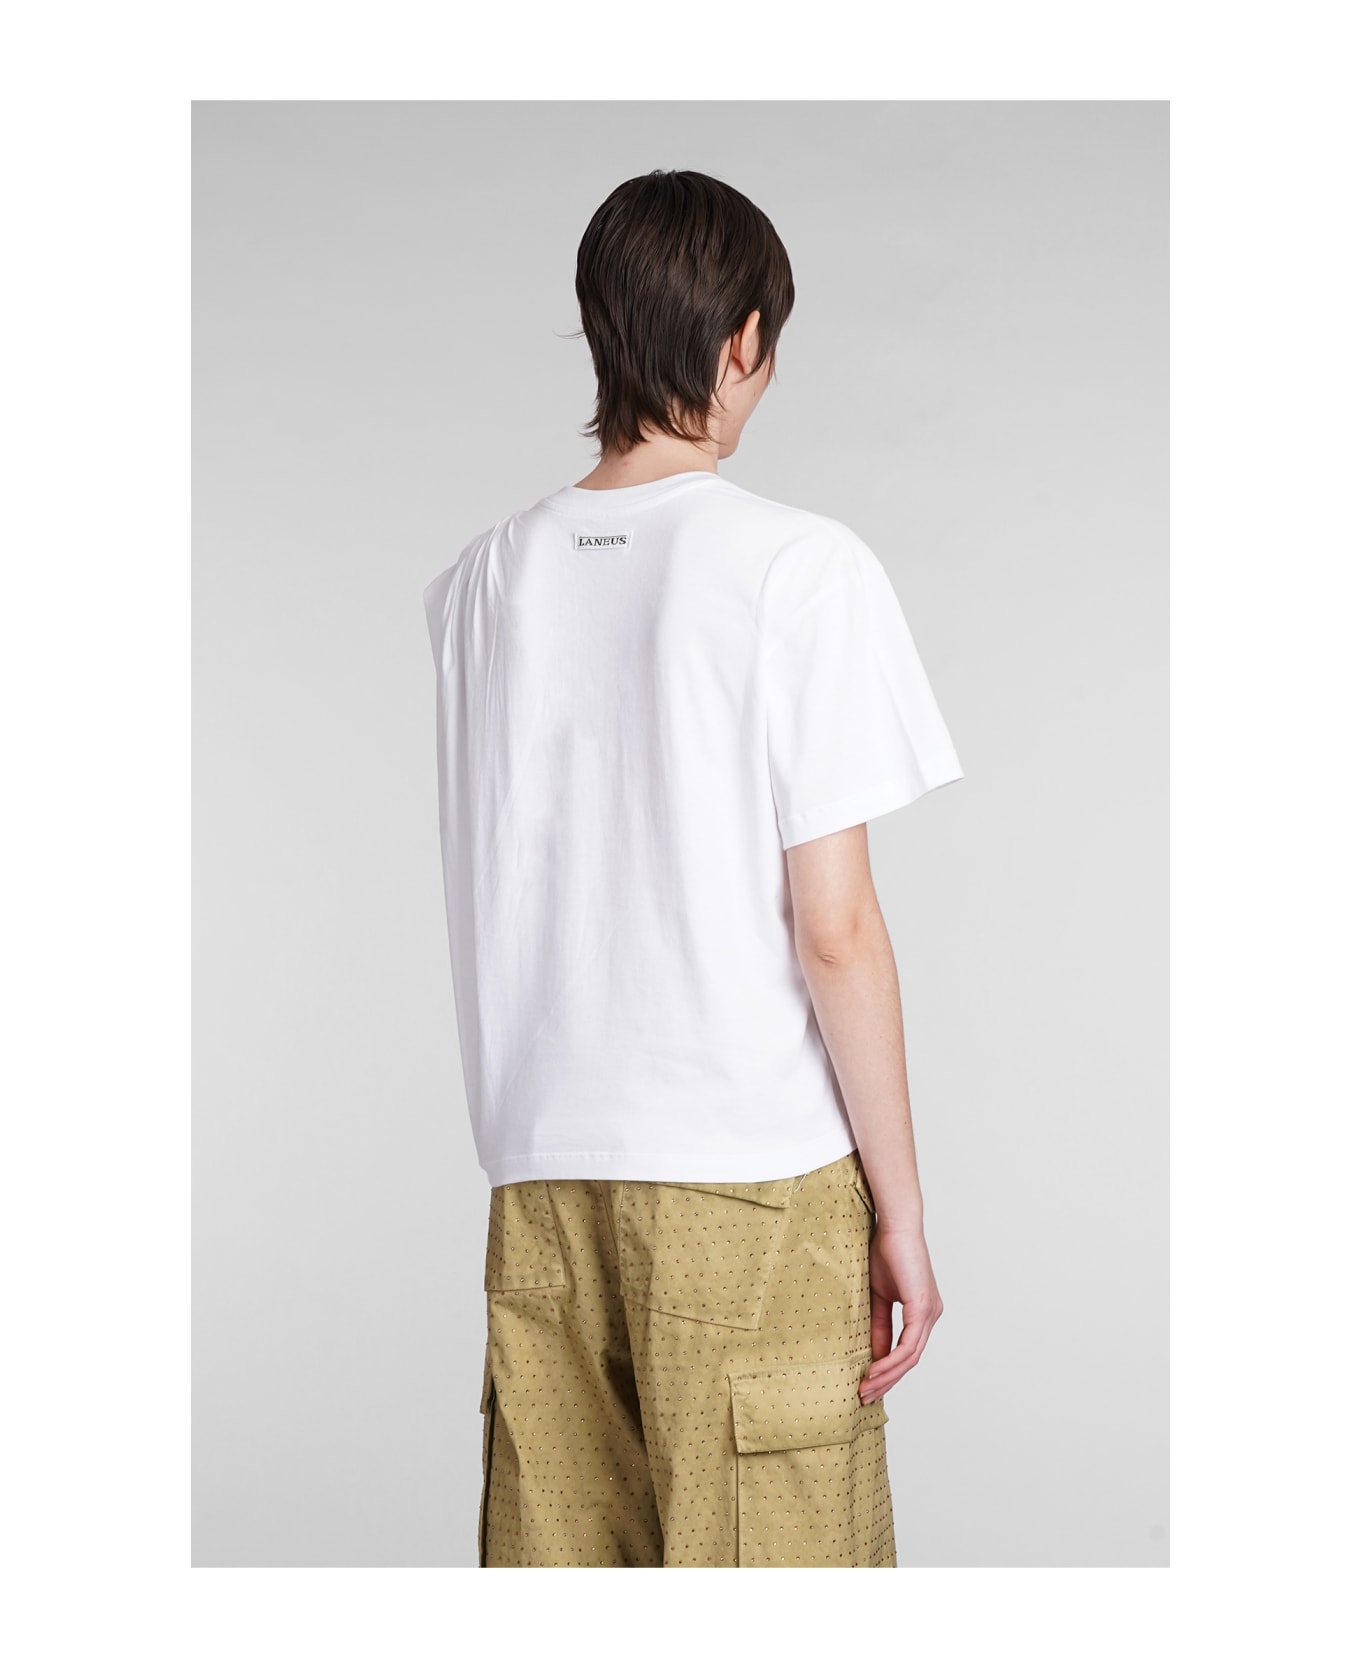 Laneus T-shirt In White Cotton - white